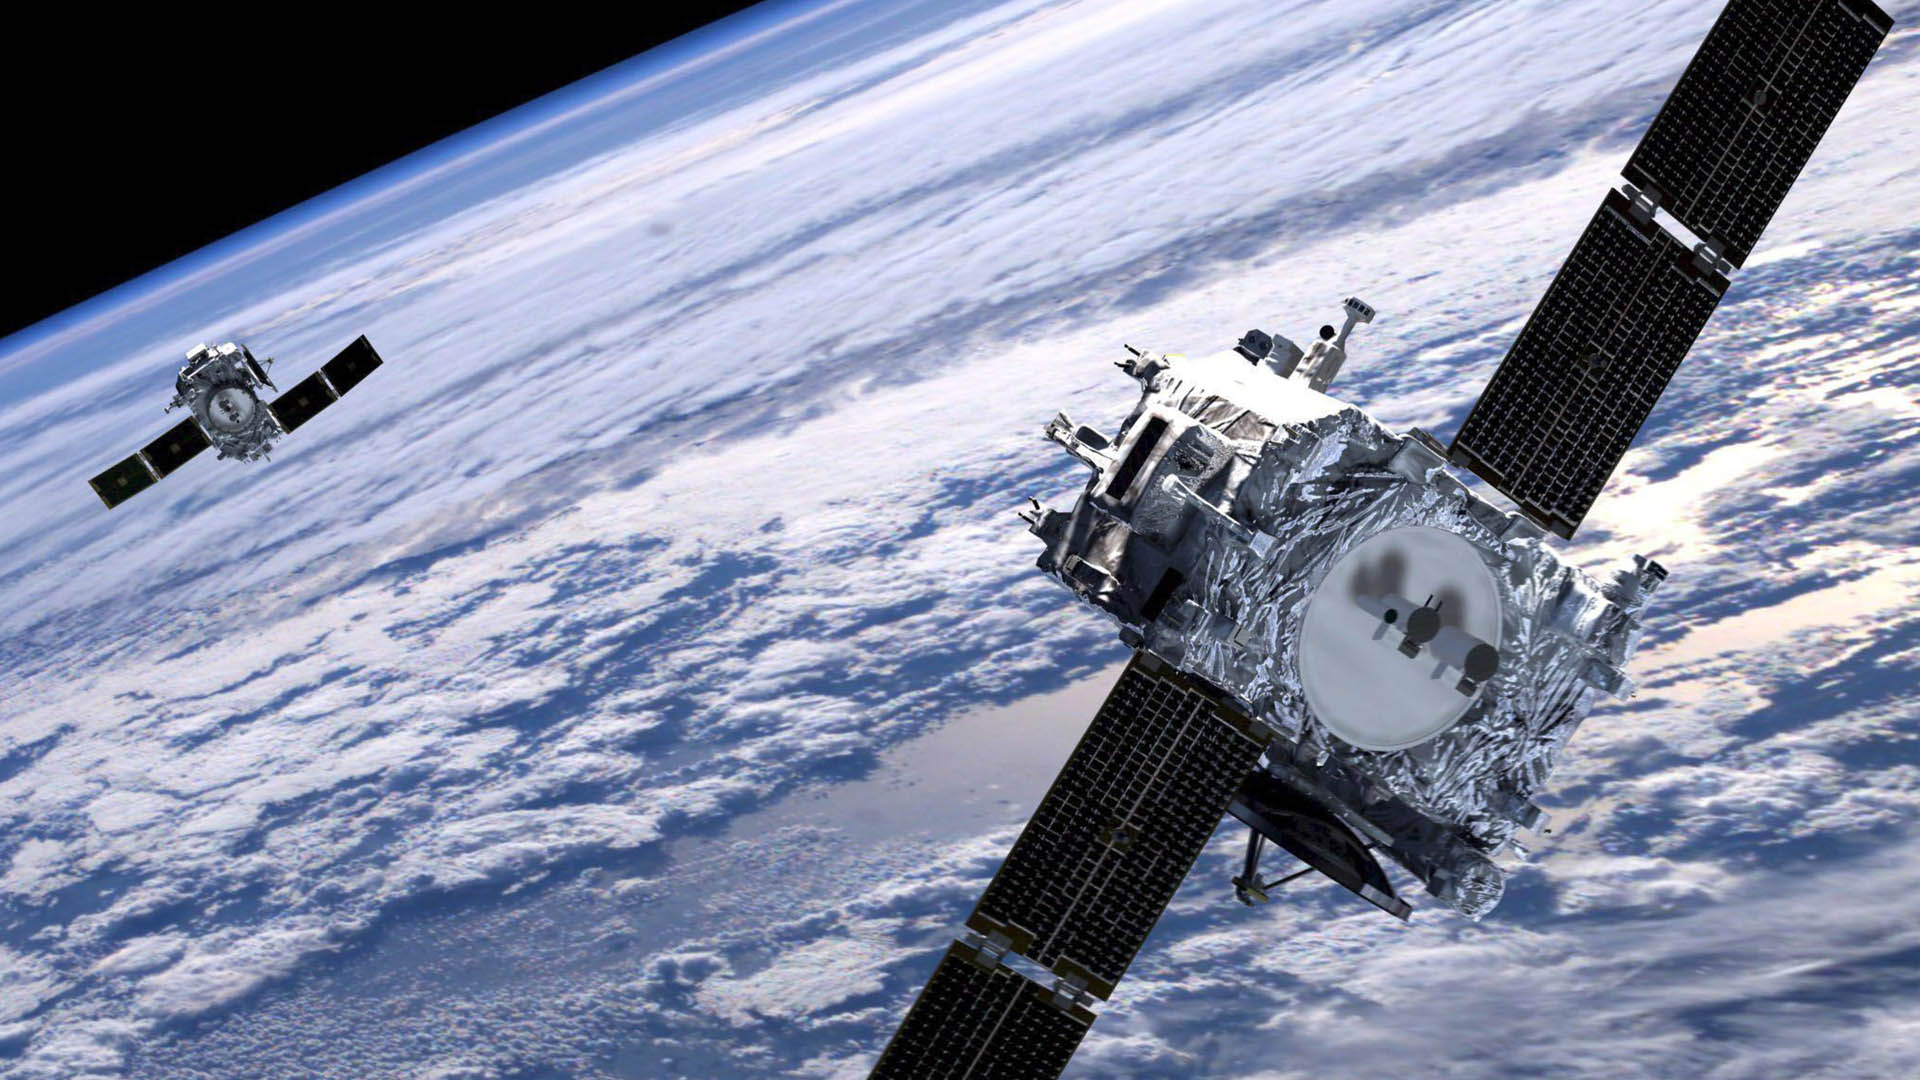 El satélite Sucre será fabricado en China para ser lanzado dentro de un año